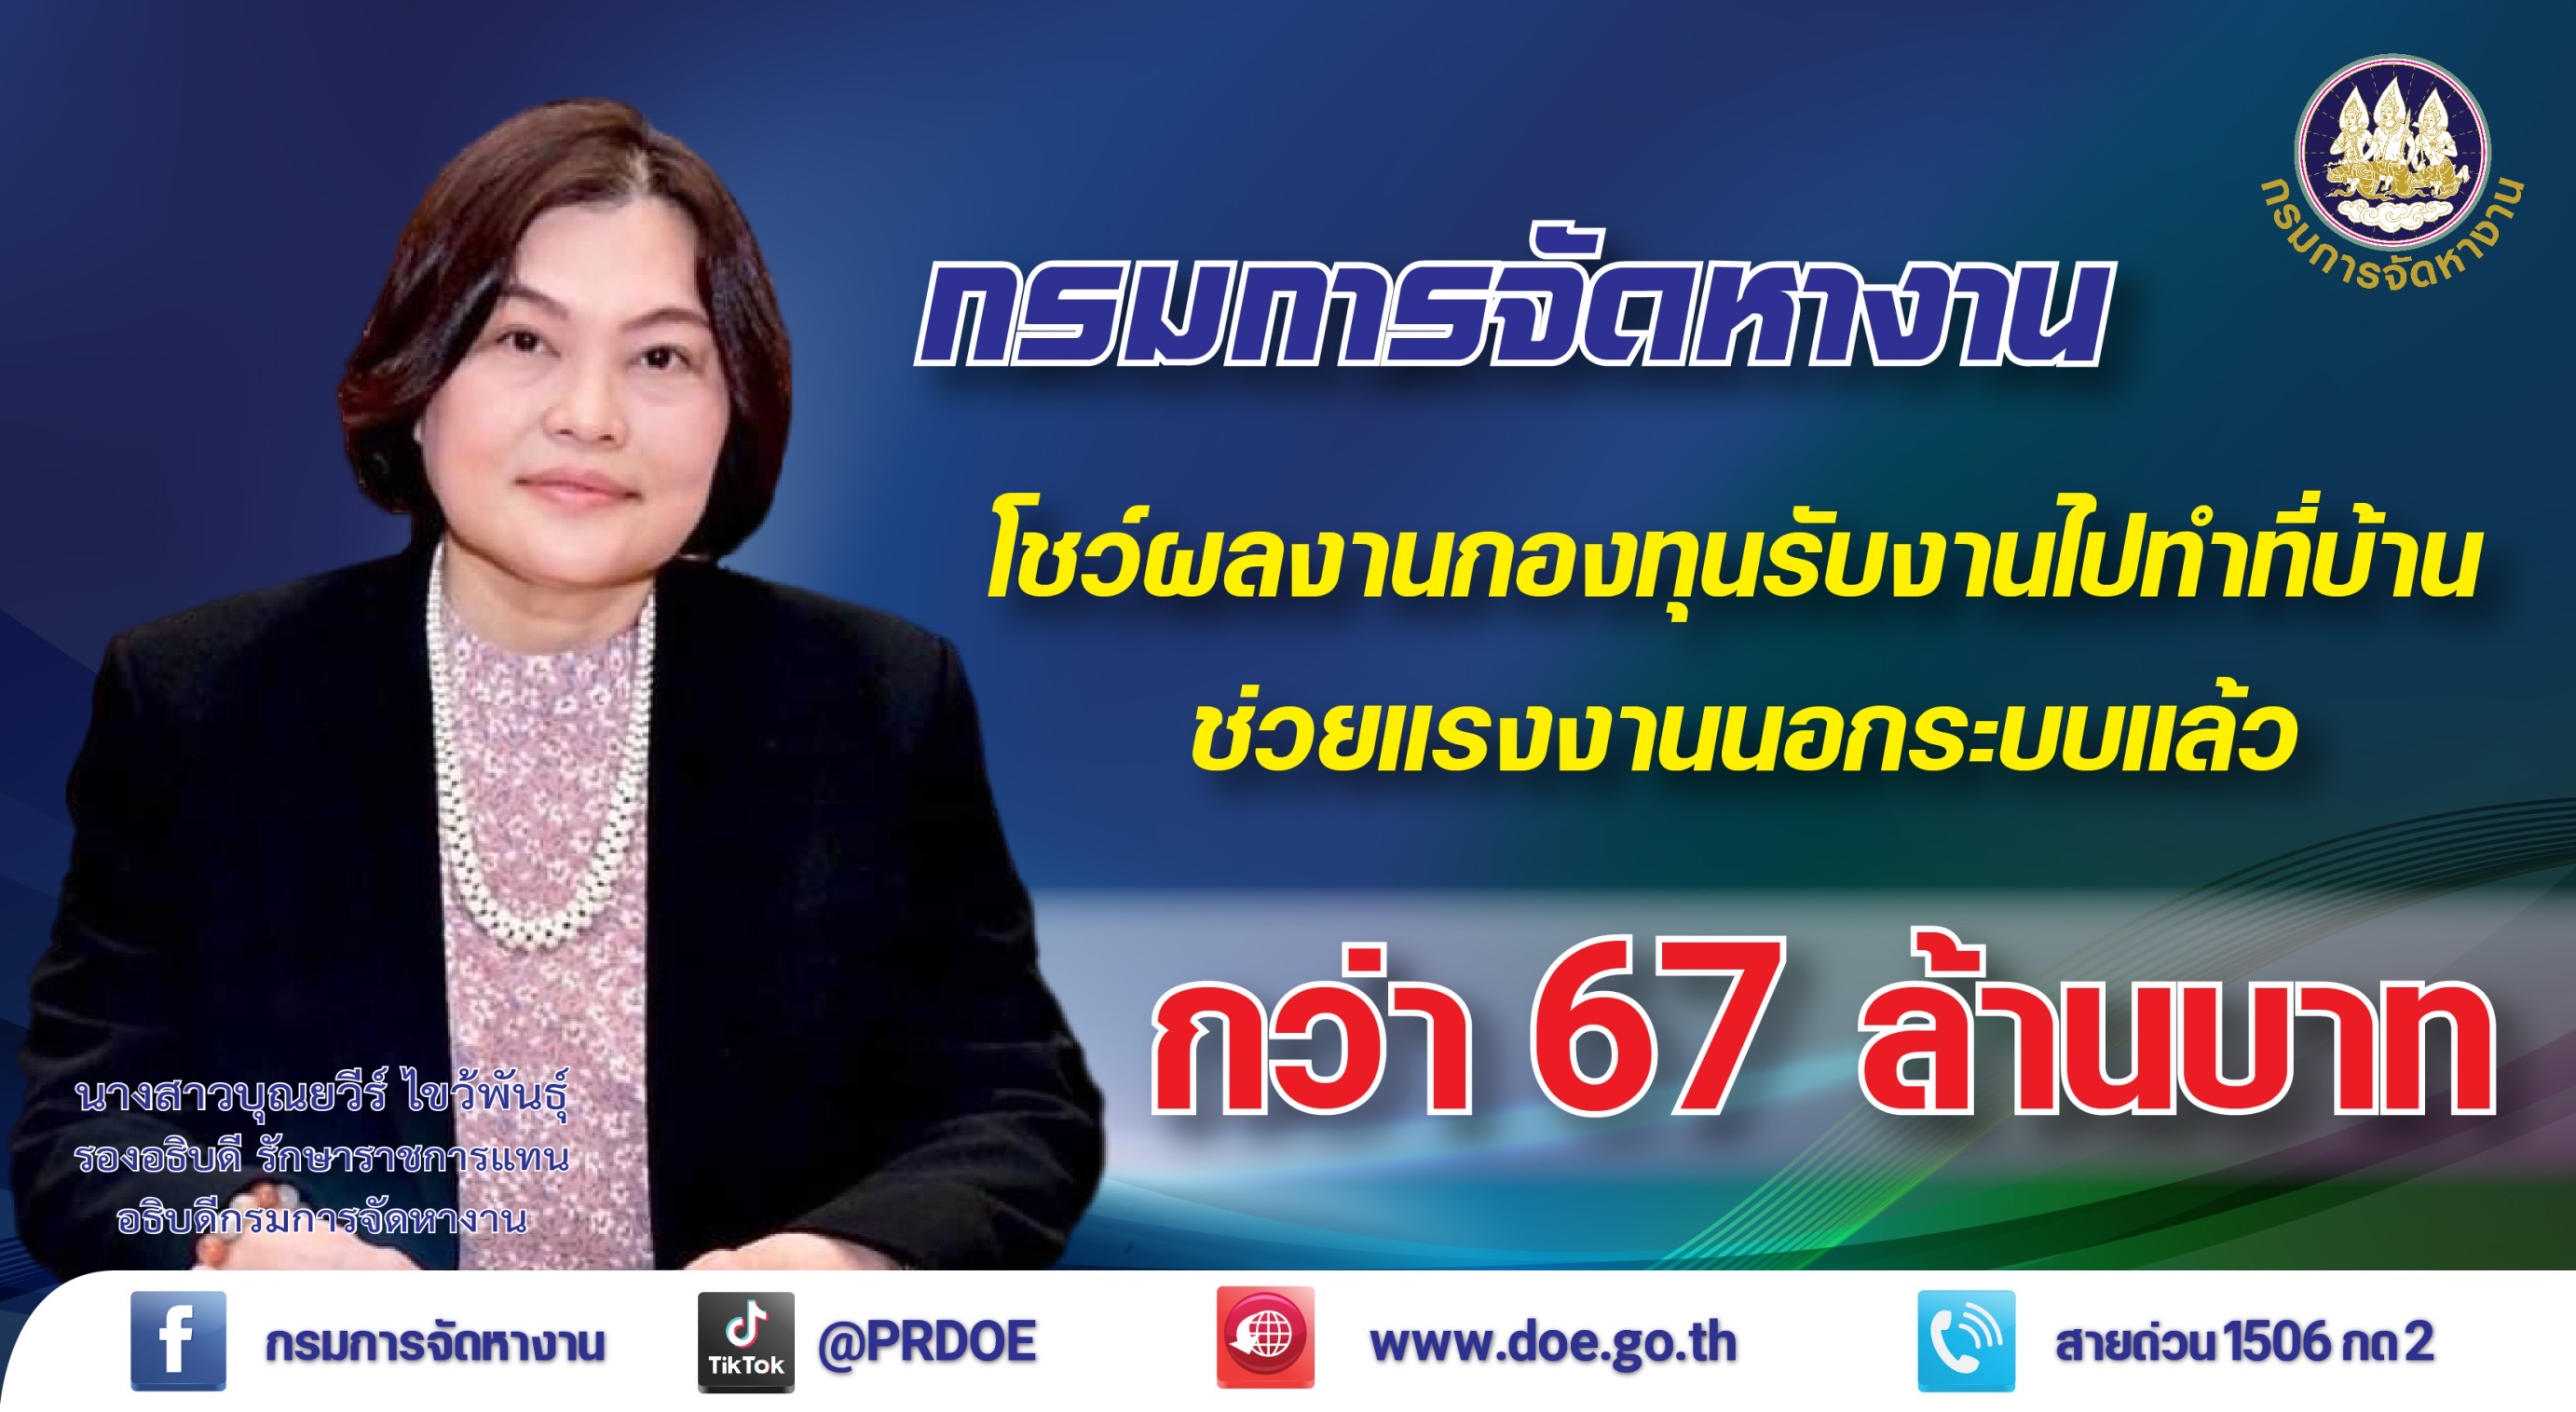 รัฐบาลไทย-ข่าวทำเนียบรัฐบาล-​กระทรวงแรงงาน โชว์ผลงานกองทุนรับงานไปทำที่บ้าน  ปล่อยกู้ 67 ล้านบาท เติมทุนแรงงานนอกระบบ